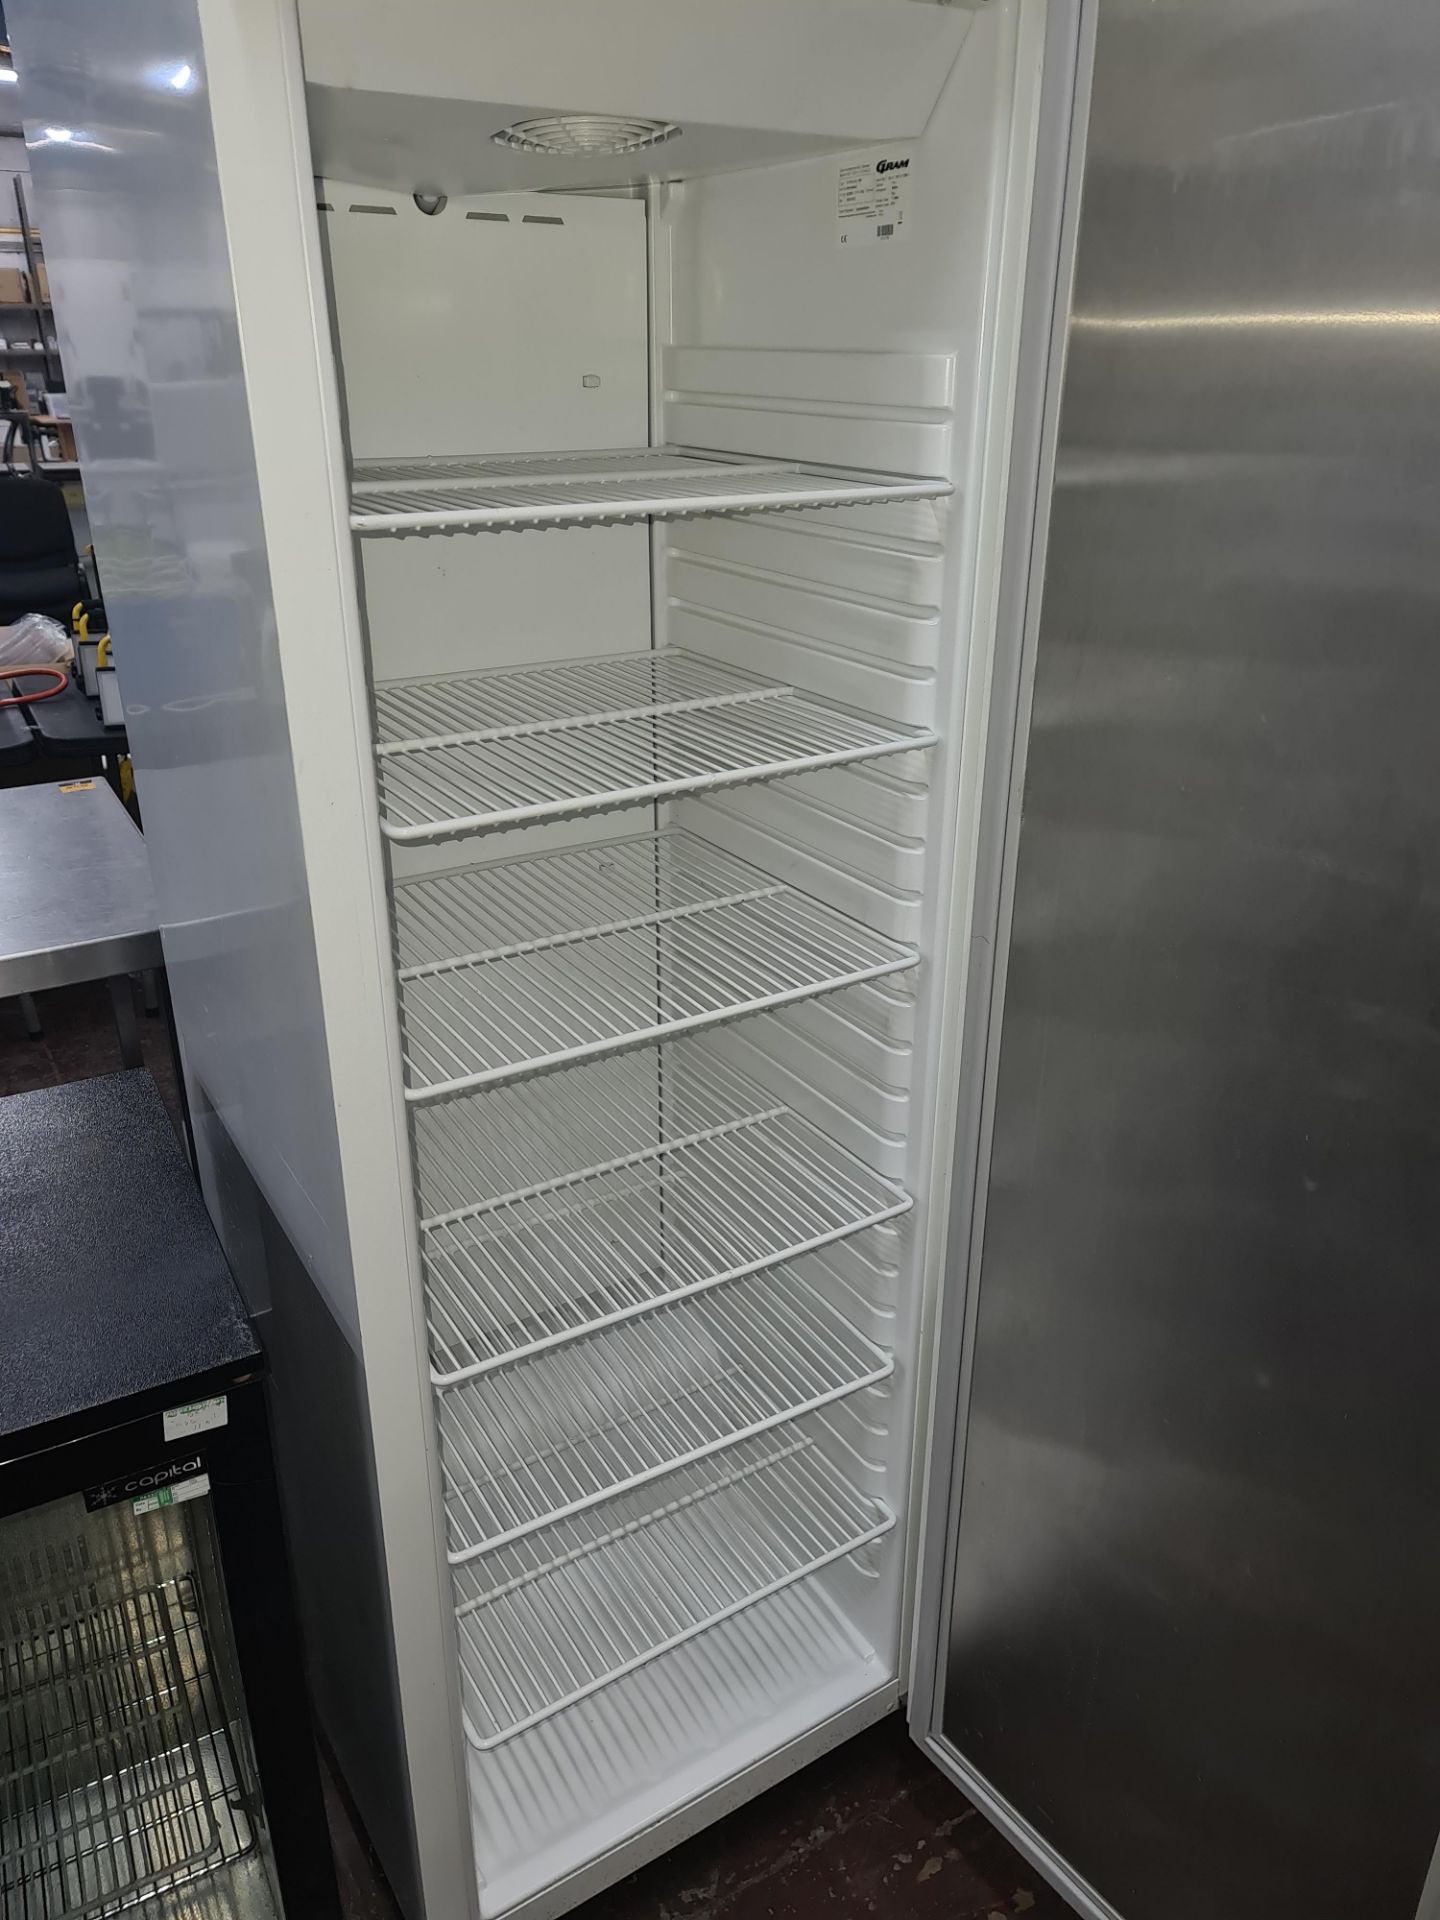 Gram K410 tall white mobile fridge - Image 3 of 4